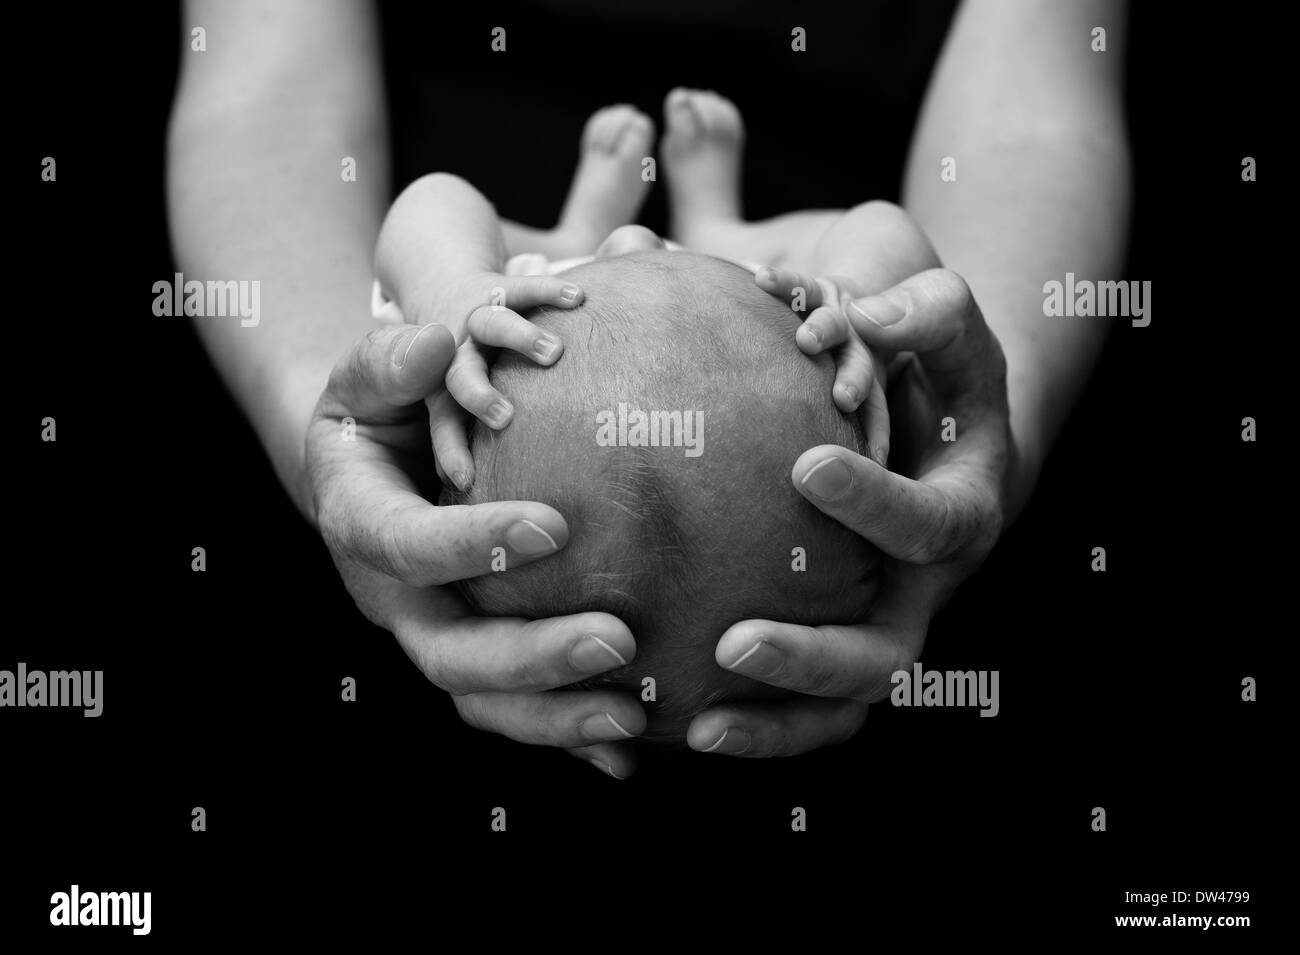 Newborn baby in mother's hands. Stock Photo